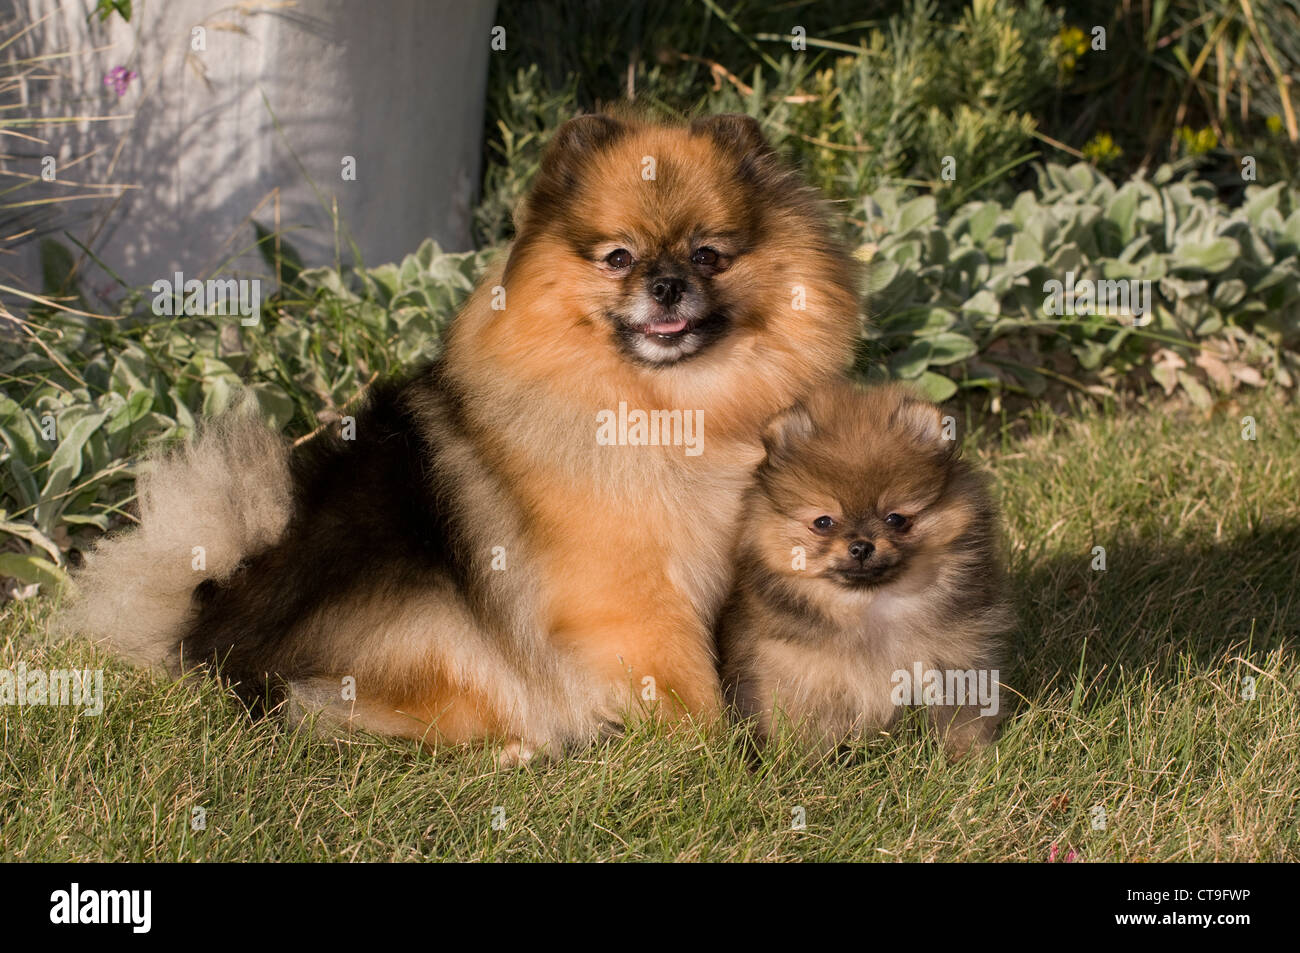 Pomeranian and puppy Stock Photo